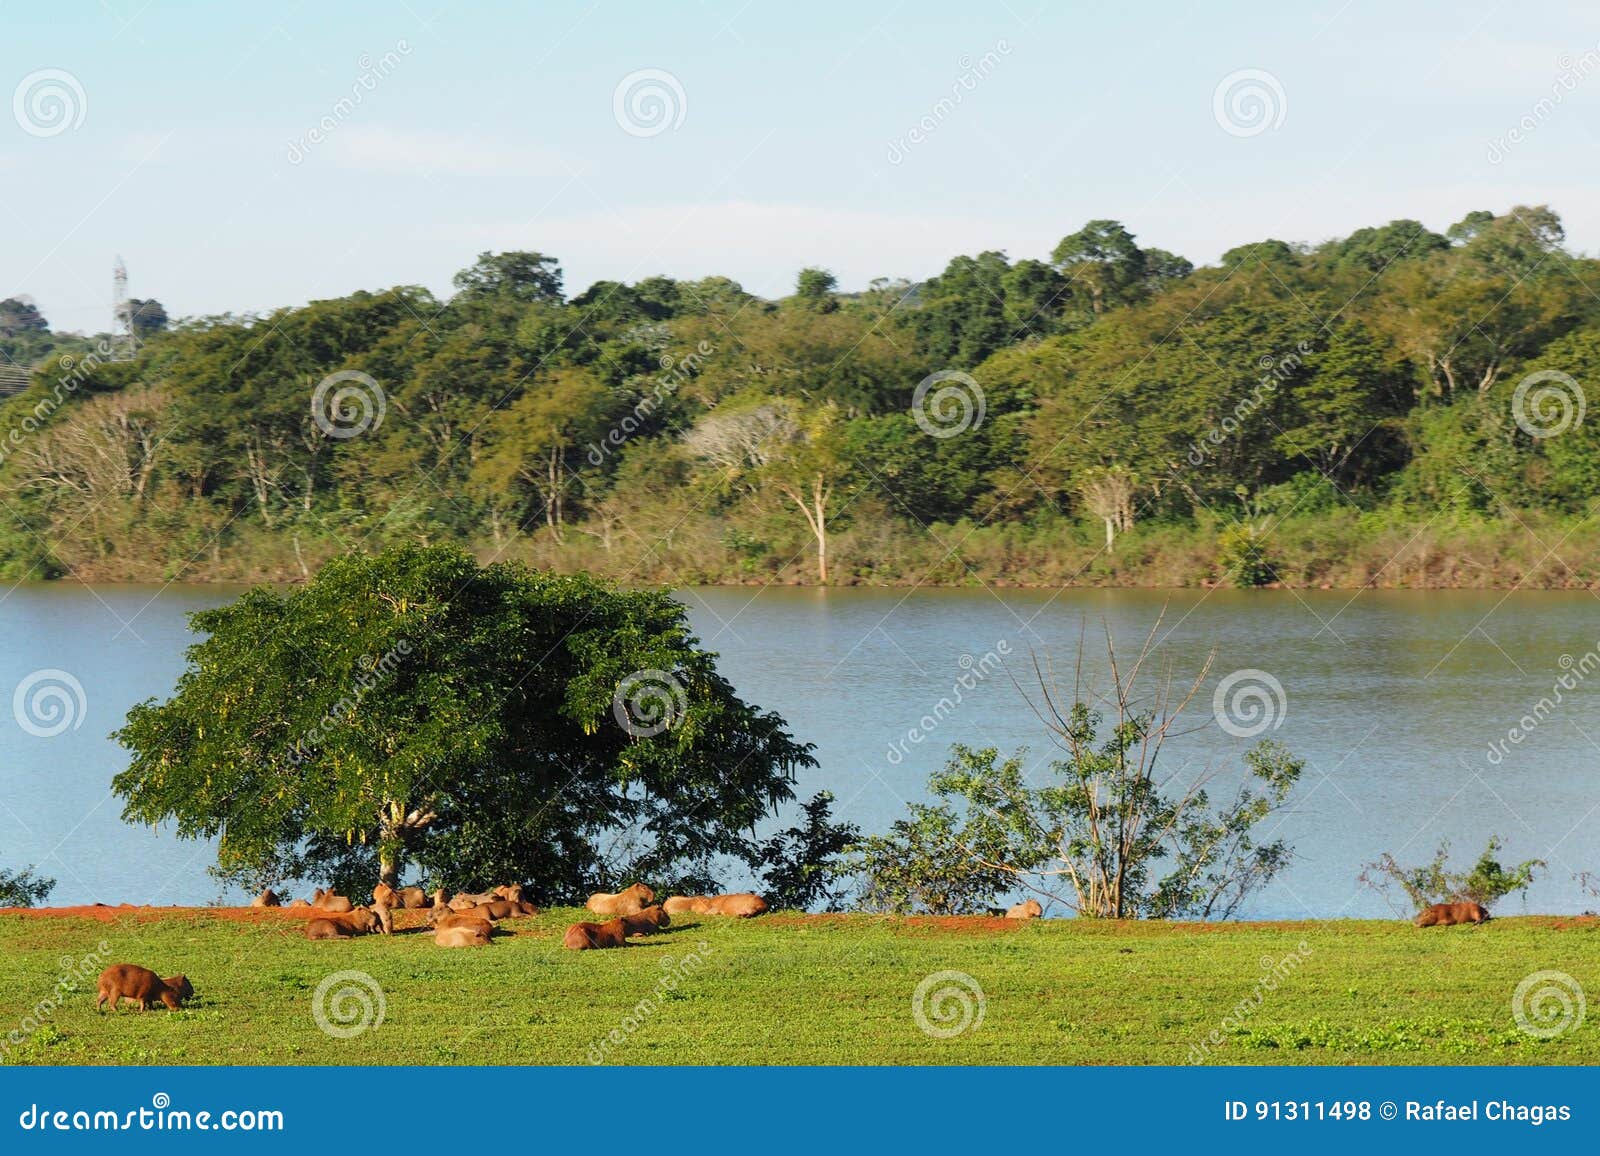 capybara at itaipu binational iguassu / brazil and paraguay